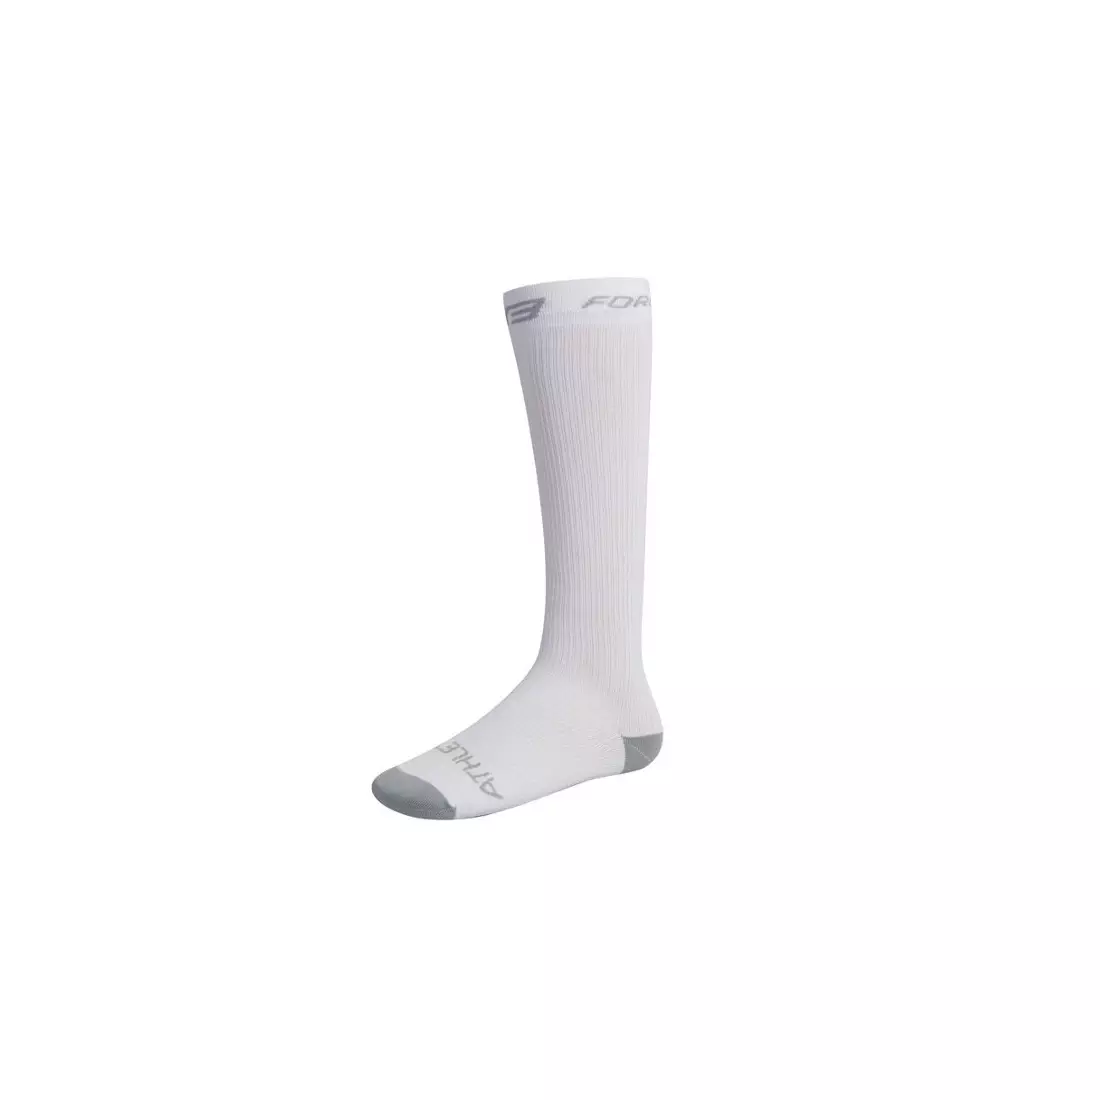 FORCE kompresné ponožky 90103, farba: biely